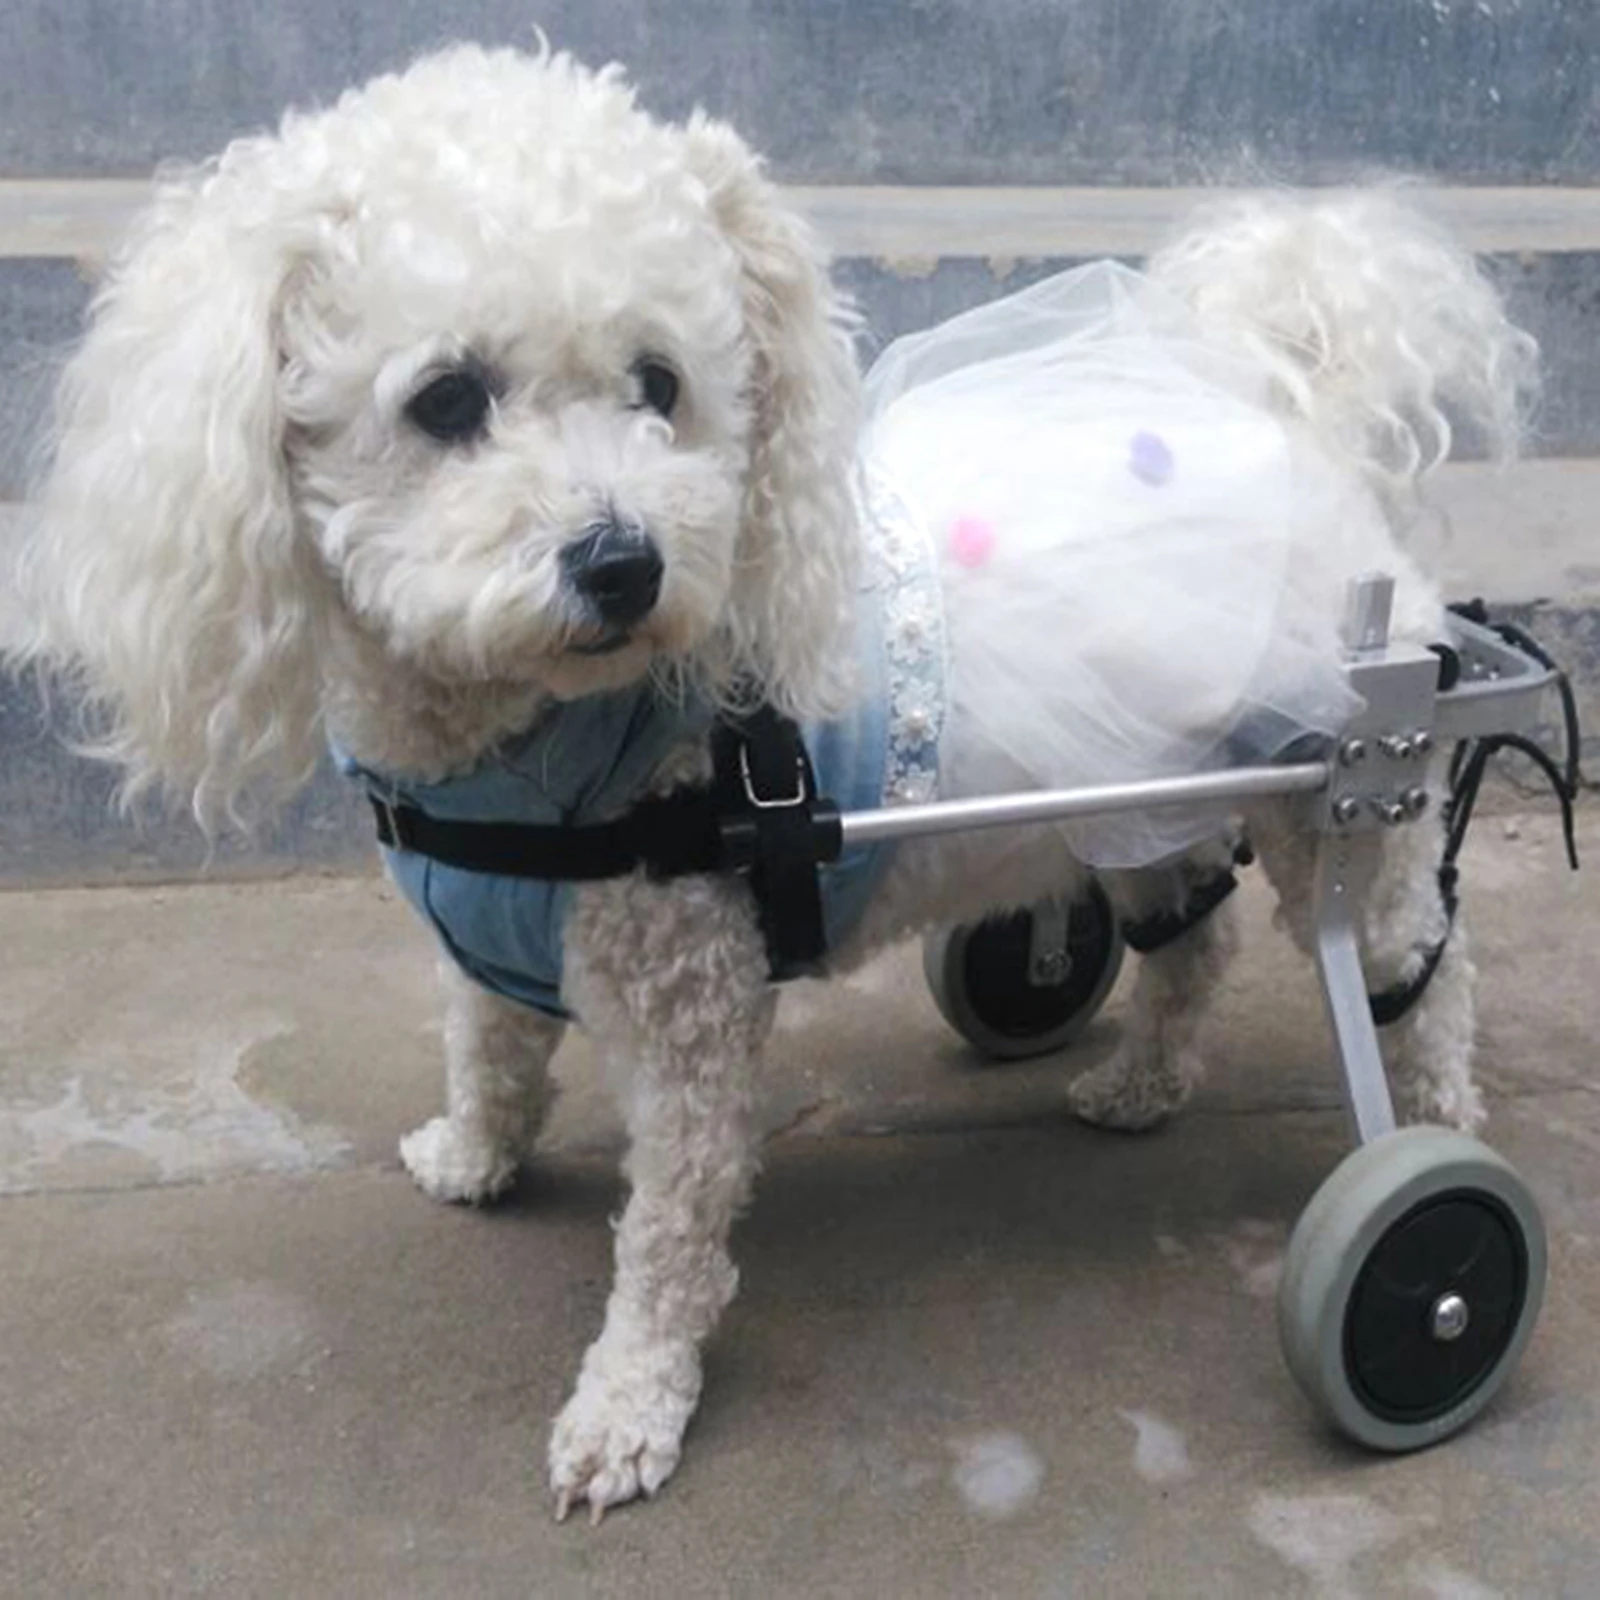 RU/UK 2-Kolesni Invalide Paraliziran Pet Voziček / Paralizo Pes Skuter / Onemogočeno Mačka /Pes Rehabilitacijo Wheelchchair S/M/L